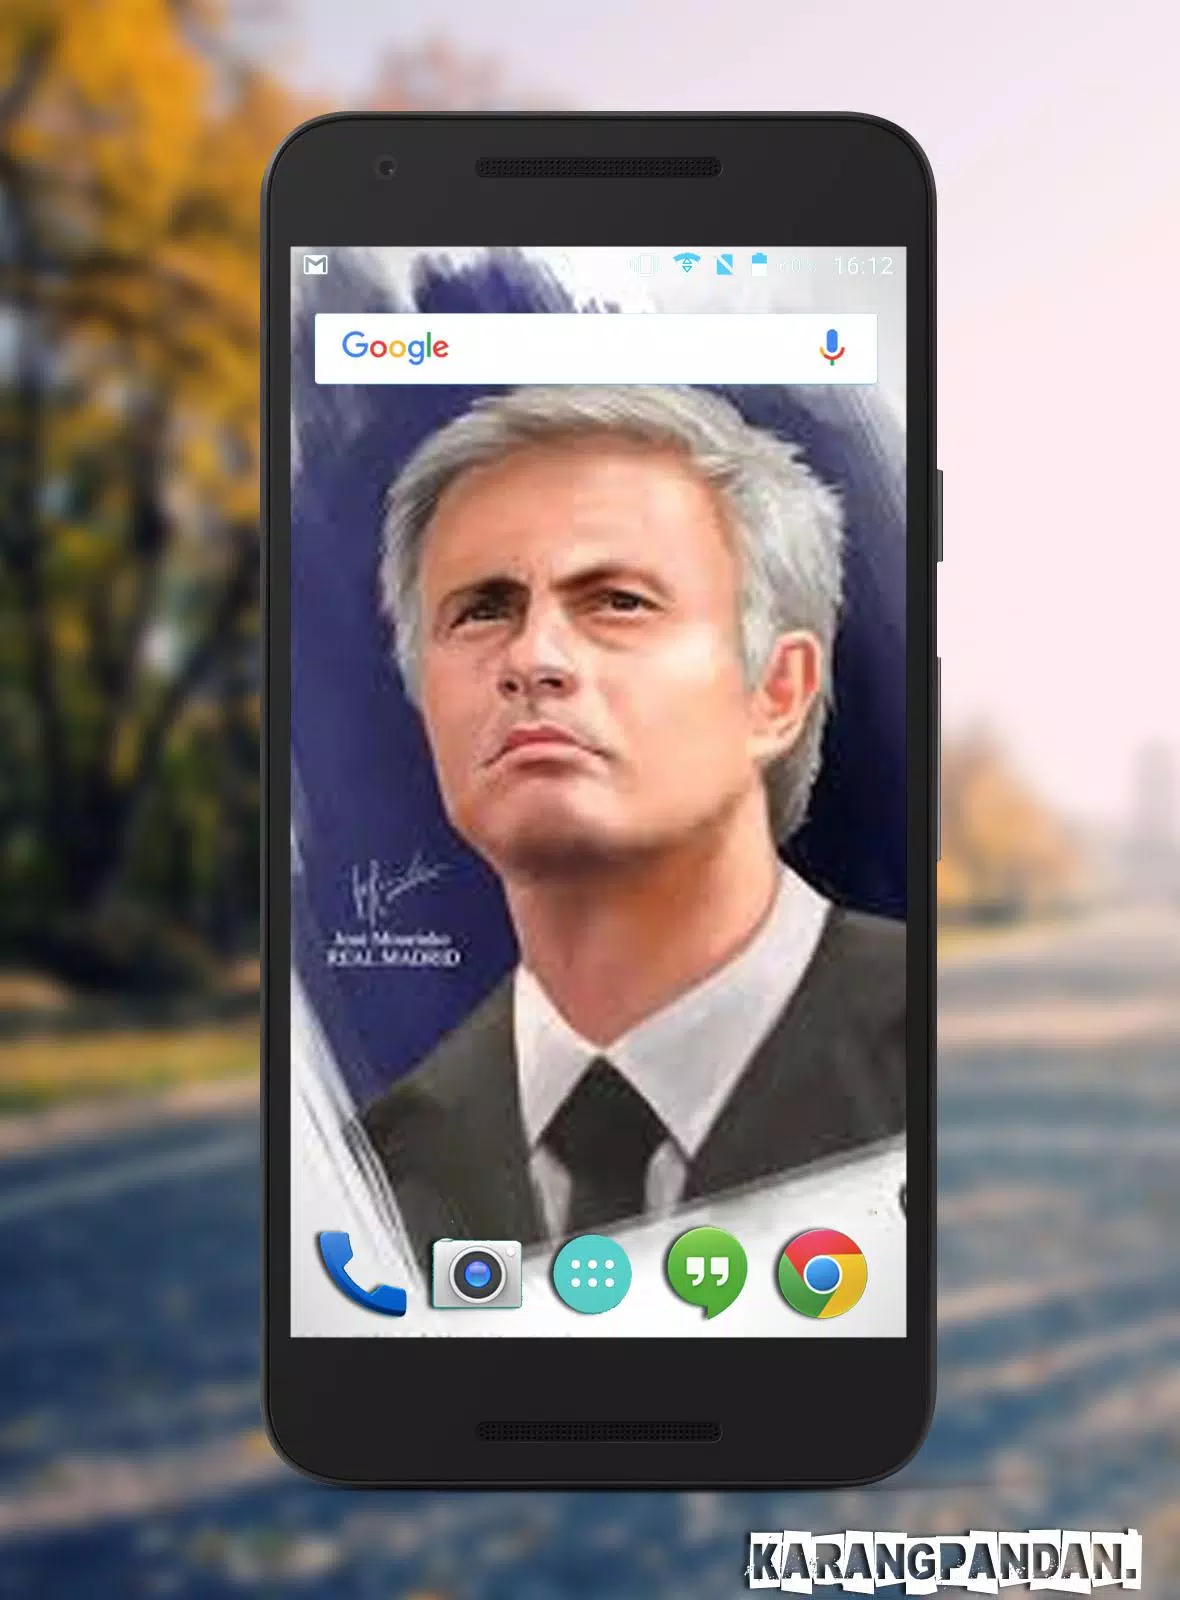 Bạn là fan của HLV Jose Mourinho và muốn lấy hình nền Android độc đáo về ông ta? Những hình ảnh tuyệt đẹp về Mourinho đã được cập nhật, và tất cả đều có thể sử dụng làm hình nền cho điện thoại Android của bạn! Hãy xem hình ảnh và tải về ngay hôm nay.